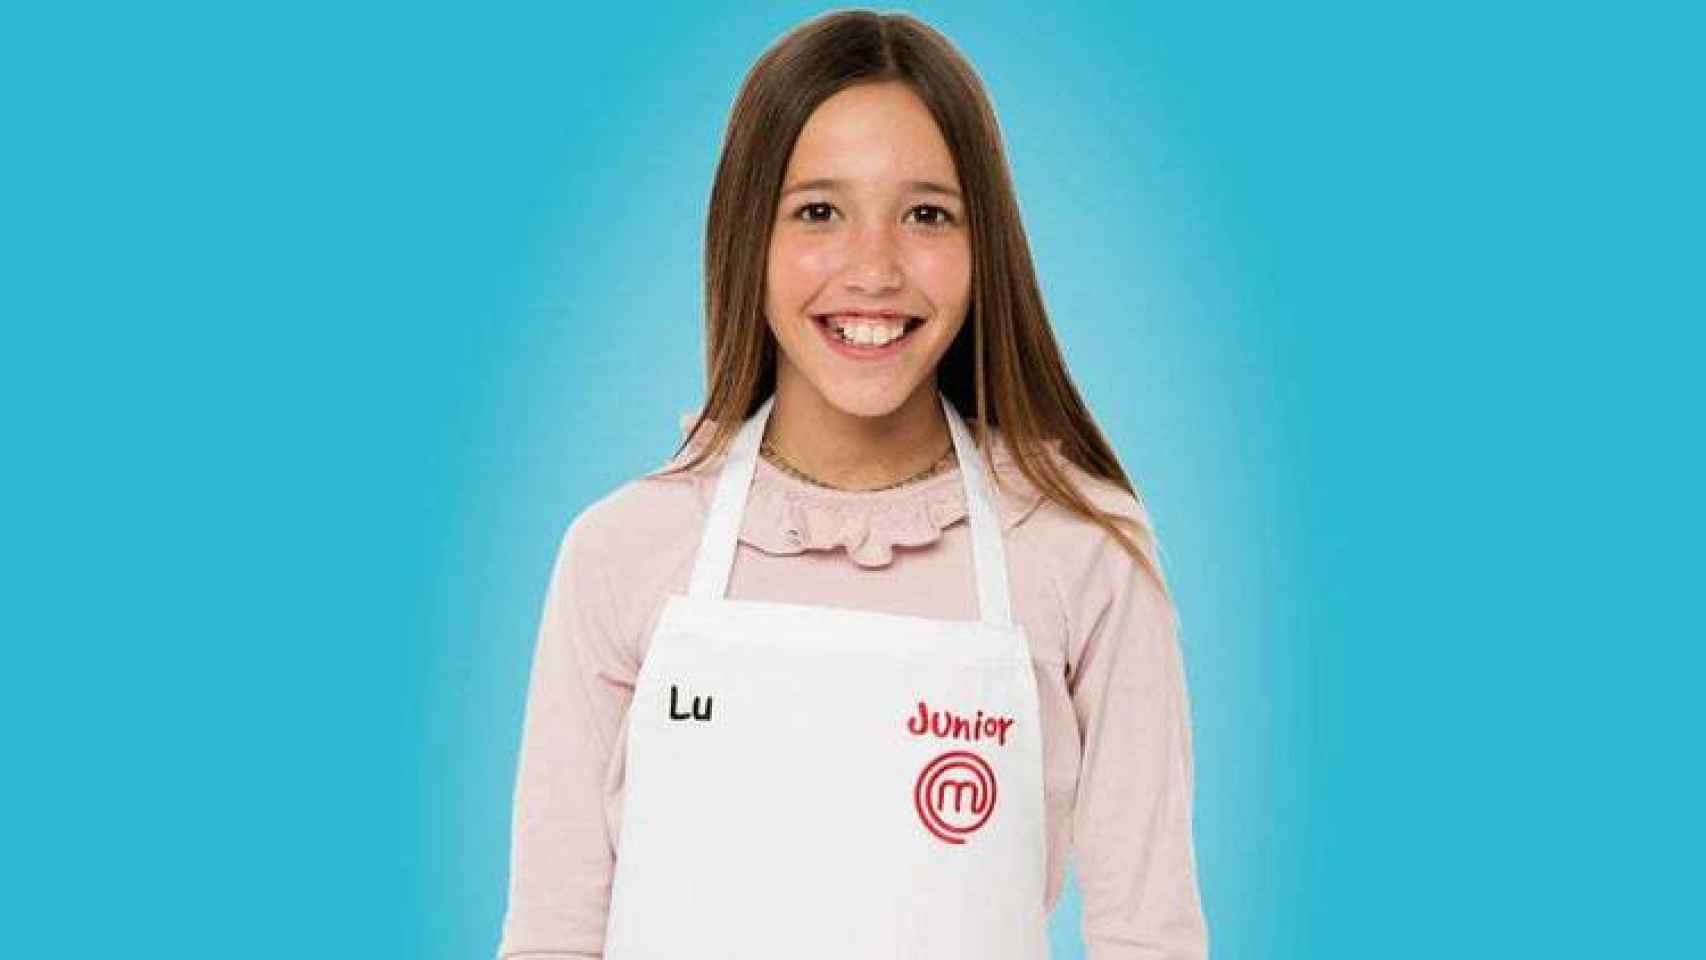 Lu, de 11 años, ha ganado el concurso de cocina con un plato en homenaje a su familia.